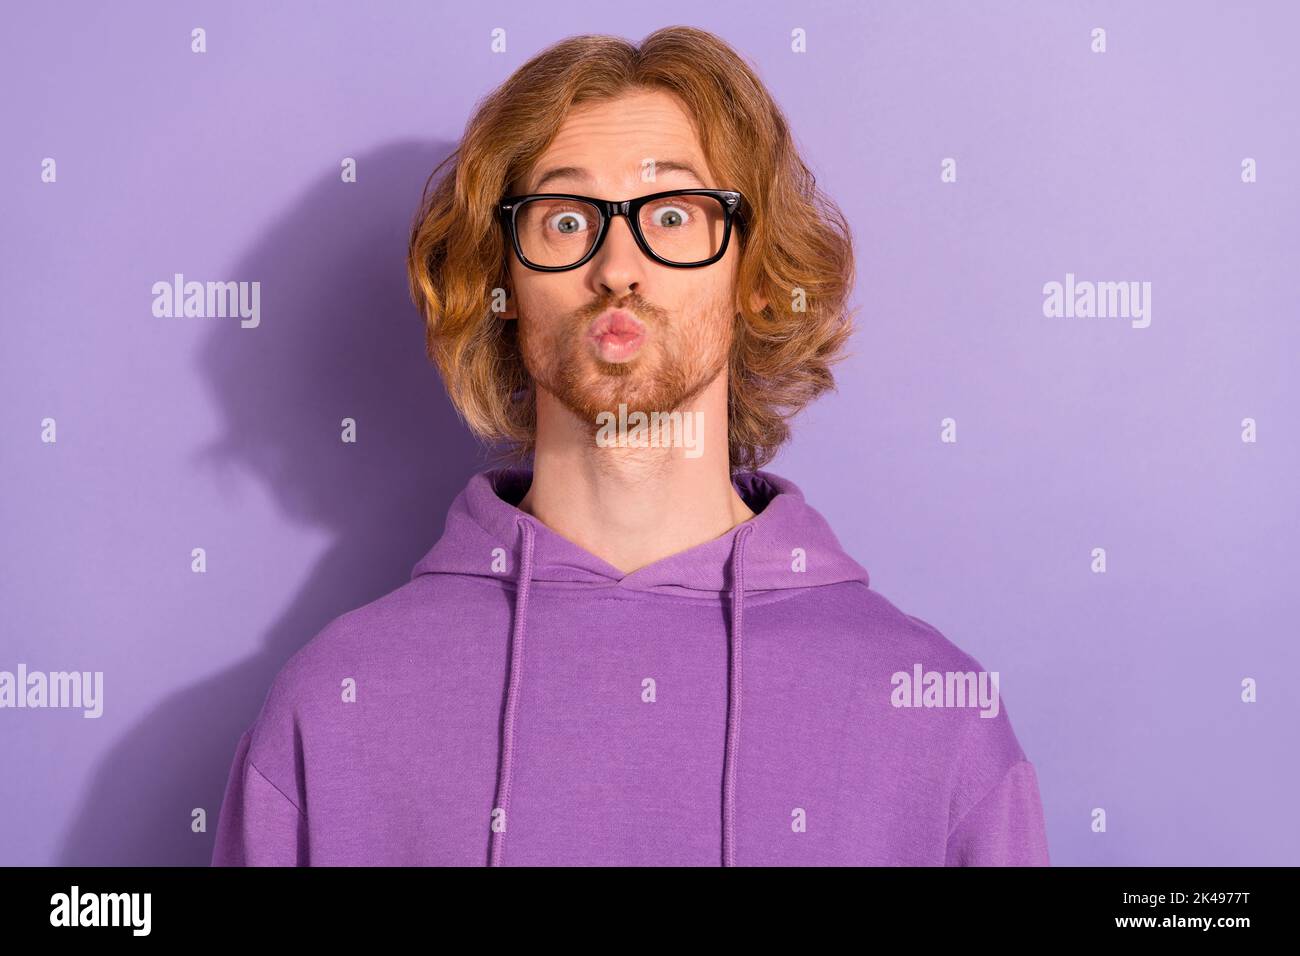 Foto von lustigen lockigen roten Frisur Kerl Schlag Kuss tragen Brillen lila Sporttuch isoliert auf violetten Hintergrund Stockfoto